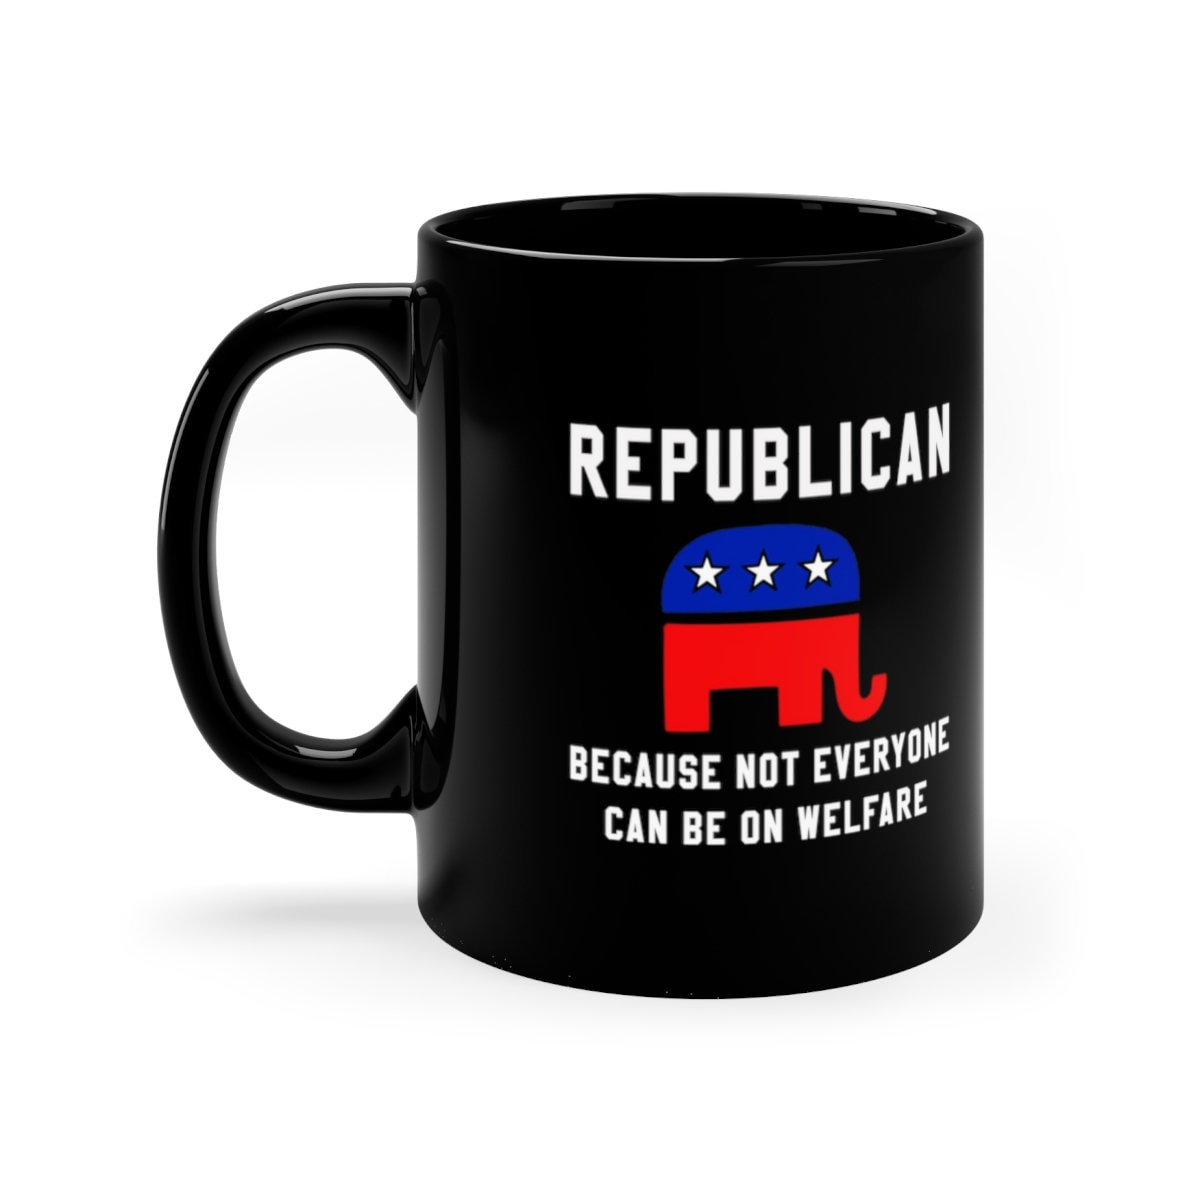 Републикански јер не могу сви да буду на кафи за благостање, Републикански поклон, Политичка шоља, подигнута републиканска, Графика слона, политичка шоља - плусминусцо.цом